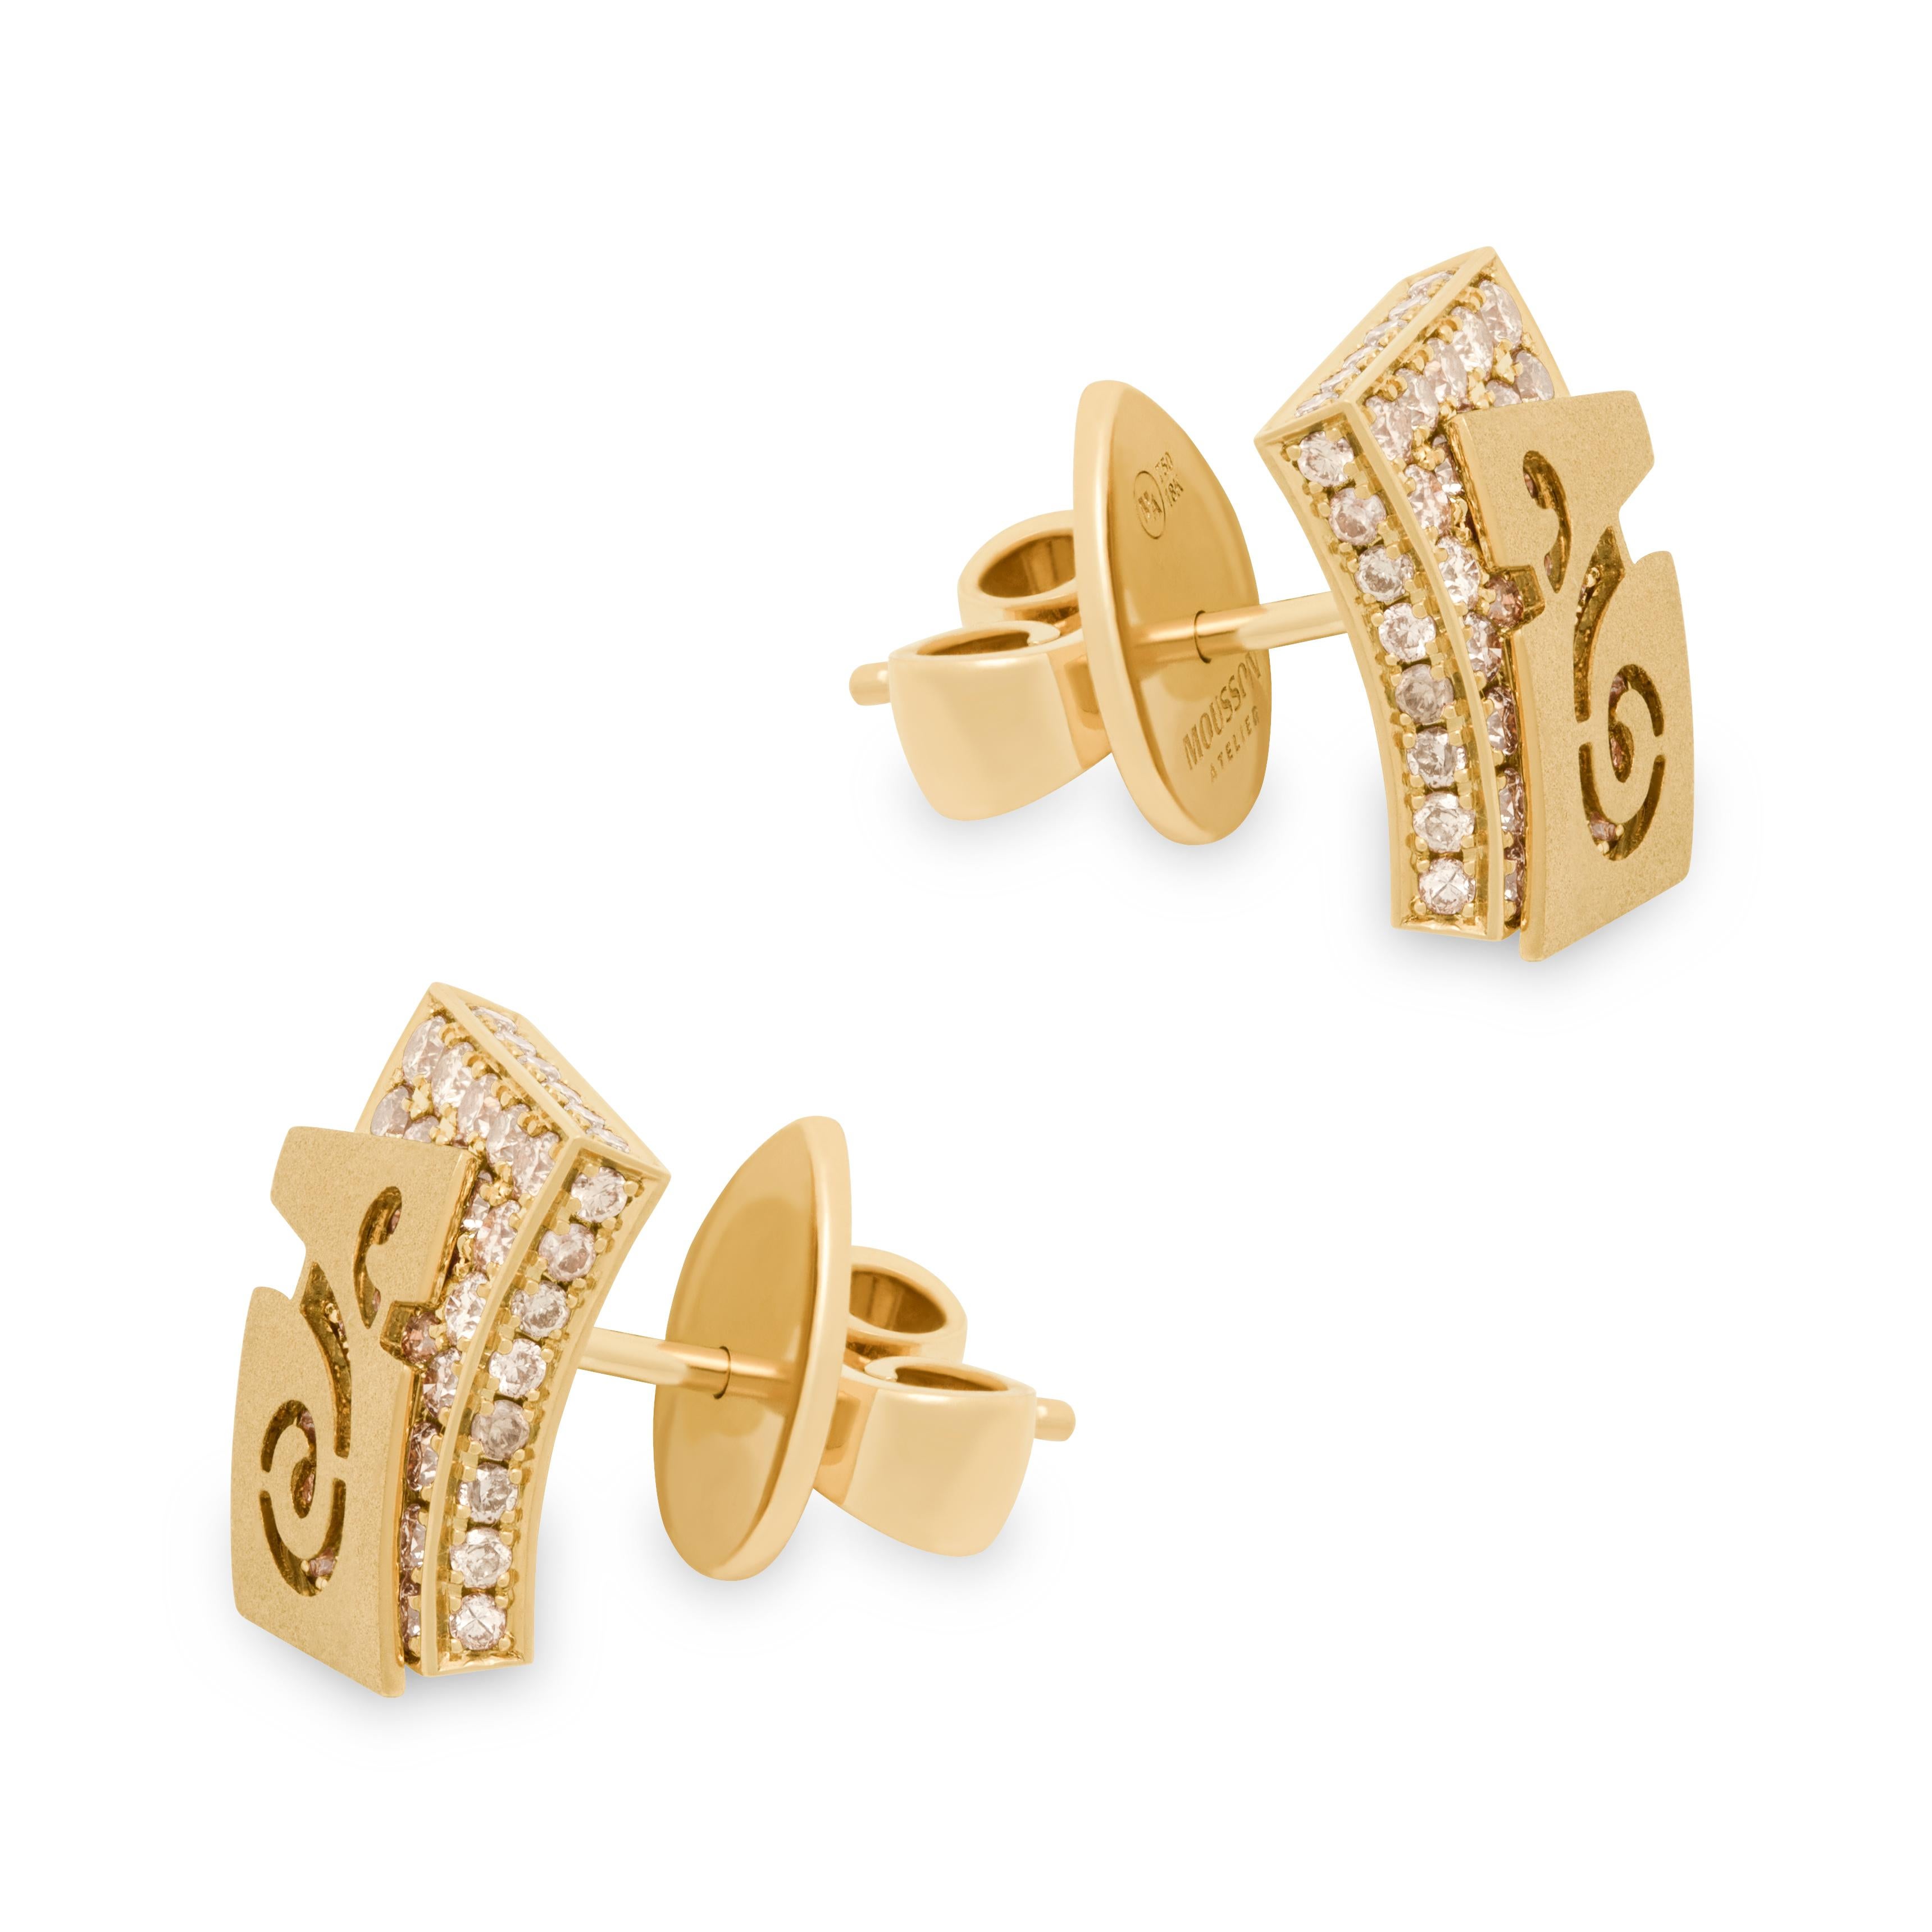 Clous d'oreilles à voile en or jaune 18 carats et diamants champagne
Veil a inspiré cette série de bijoux à nos designers. Par exemple, ces boucles d'oreilles semblent avoir deux couches. La première couche est un 